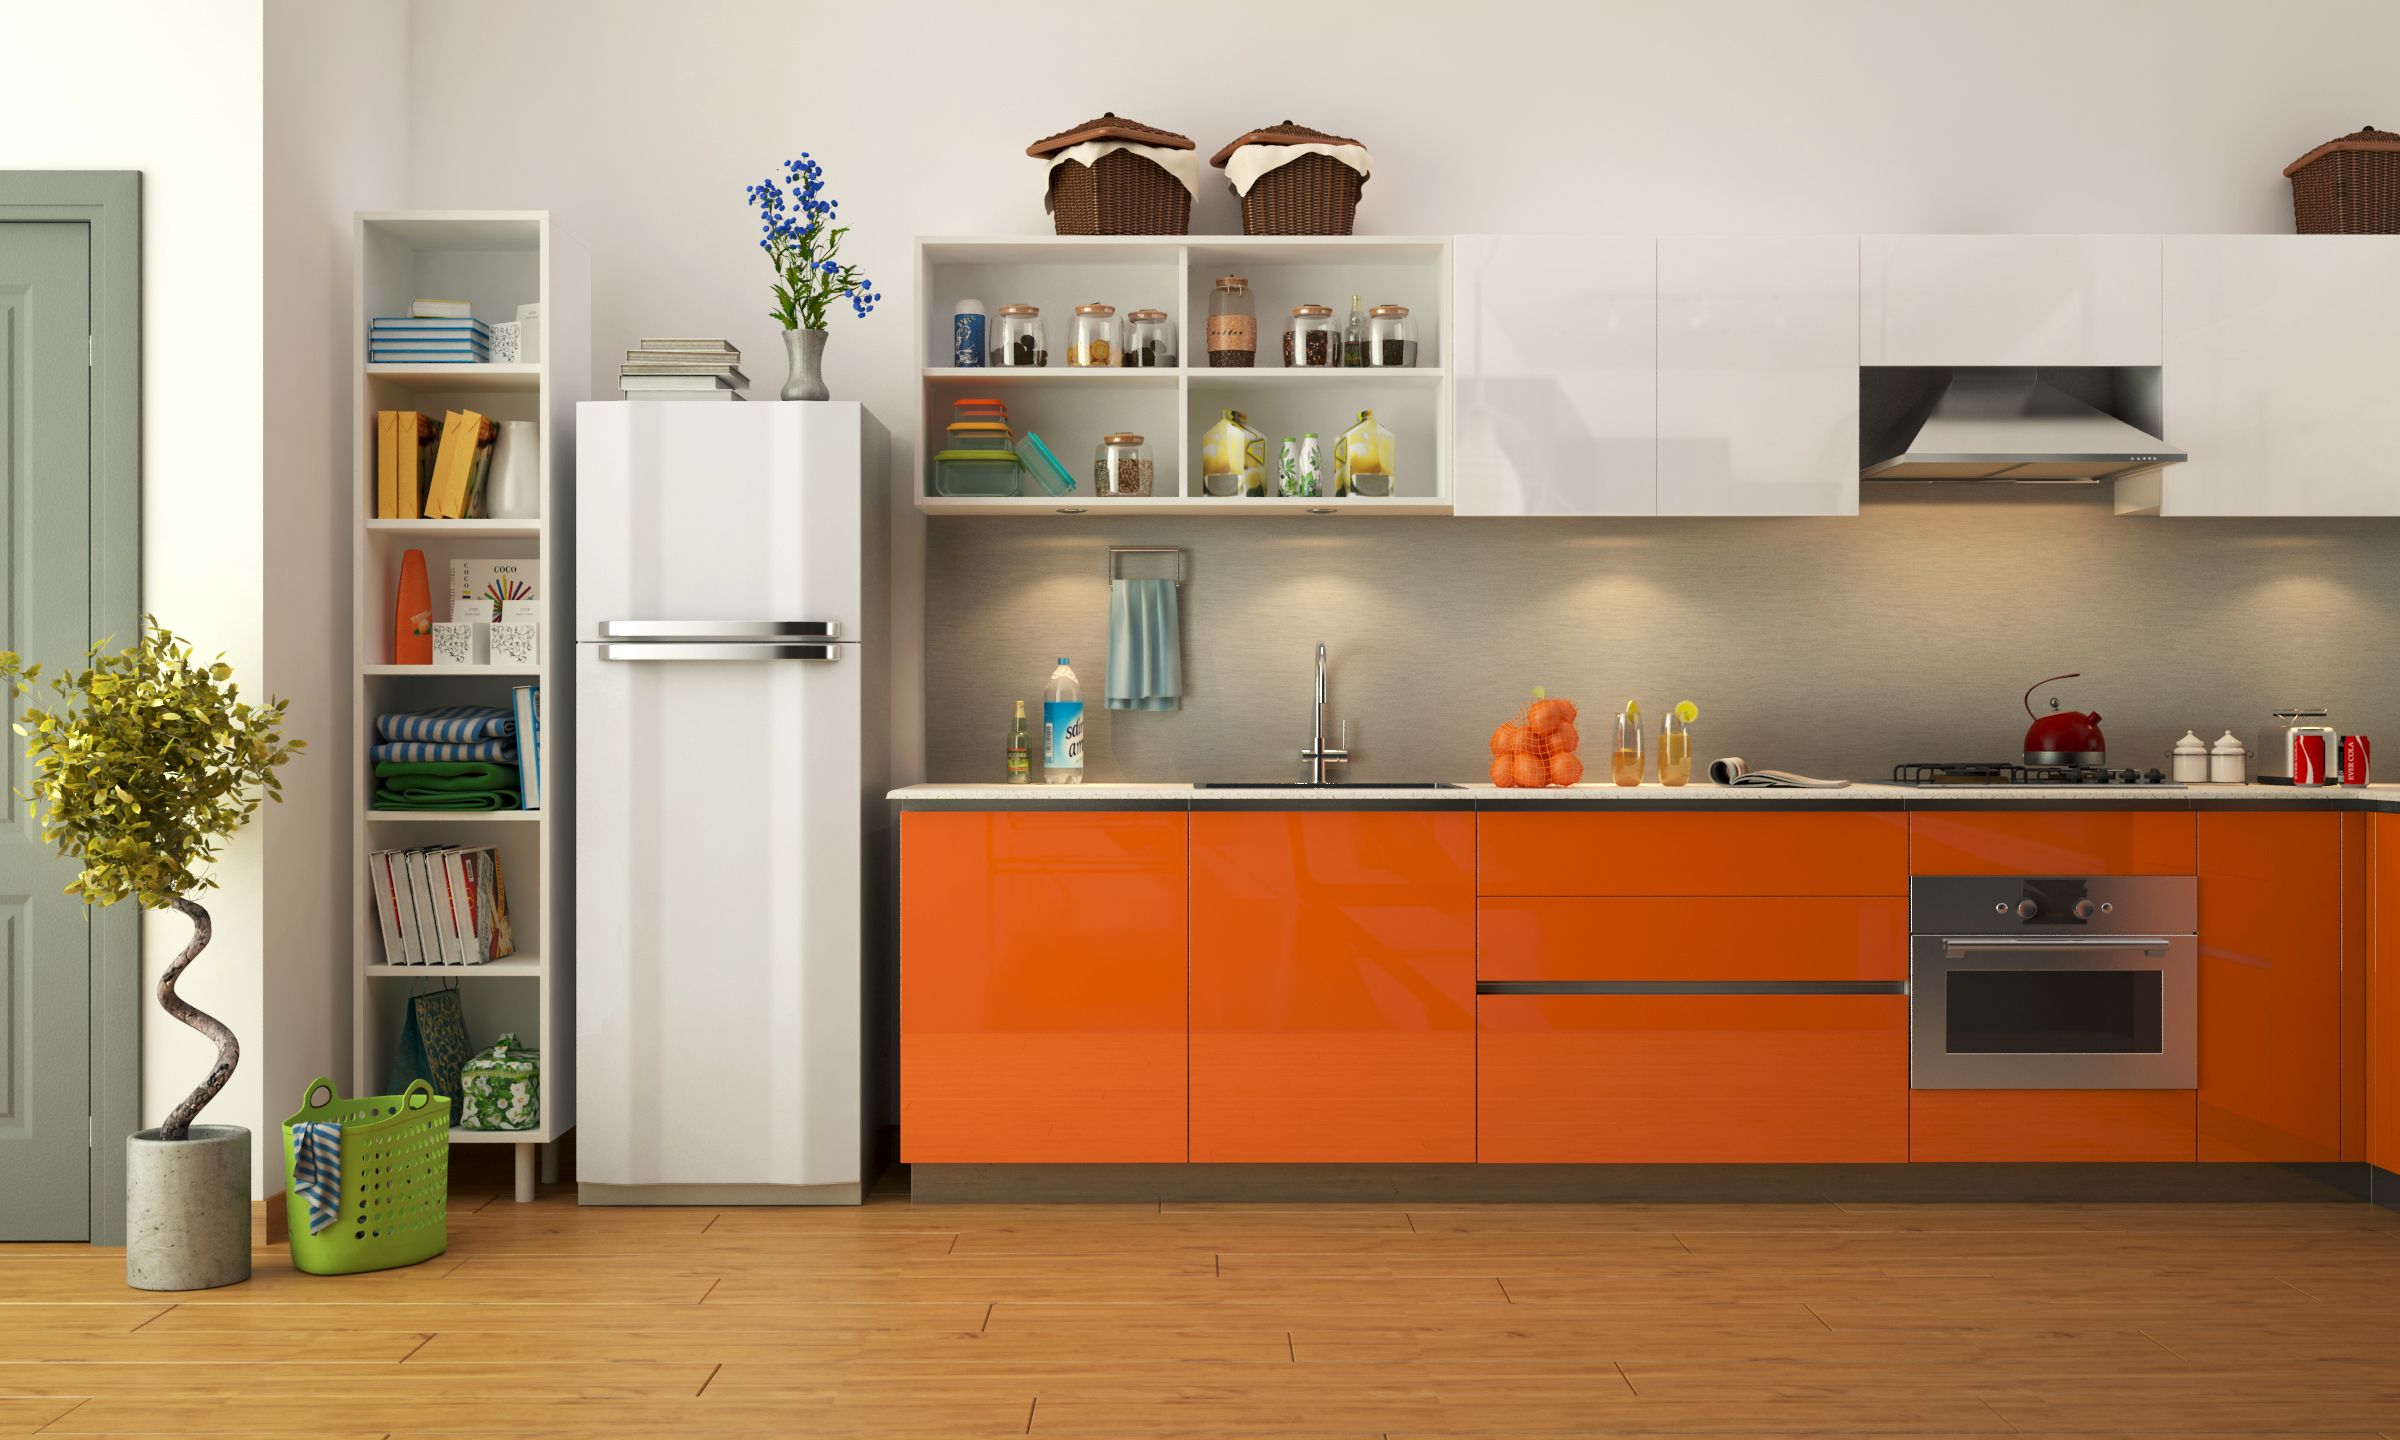 Kitchen for senior citizens - orange kitchen